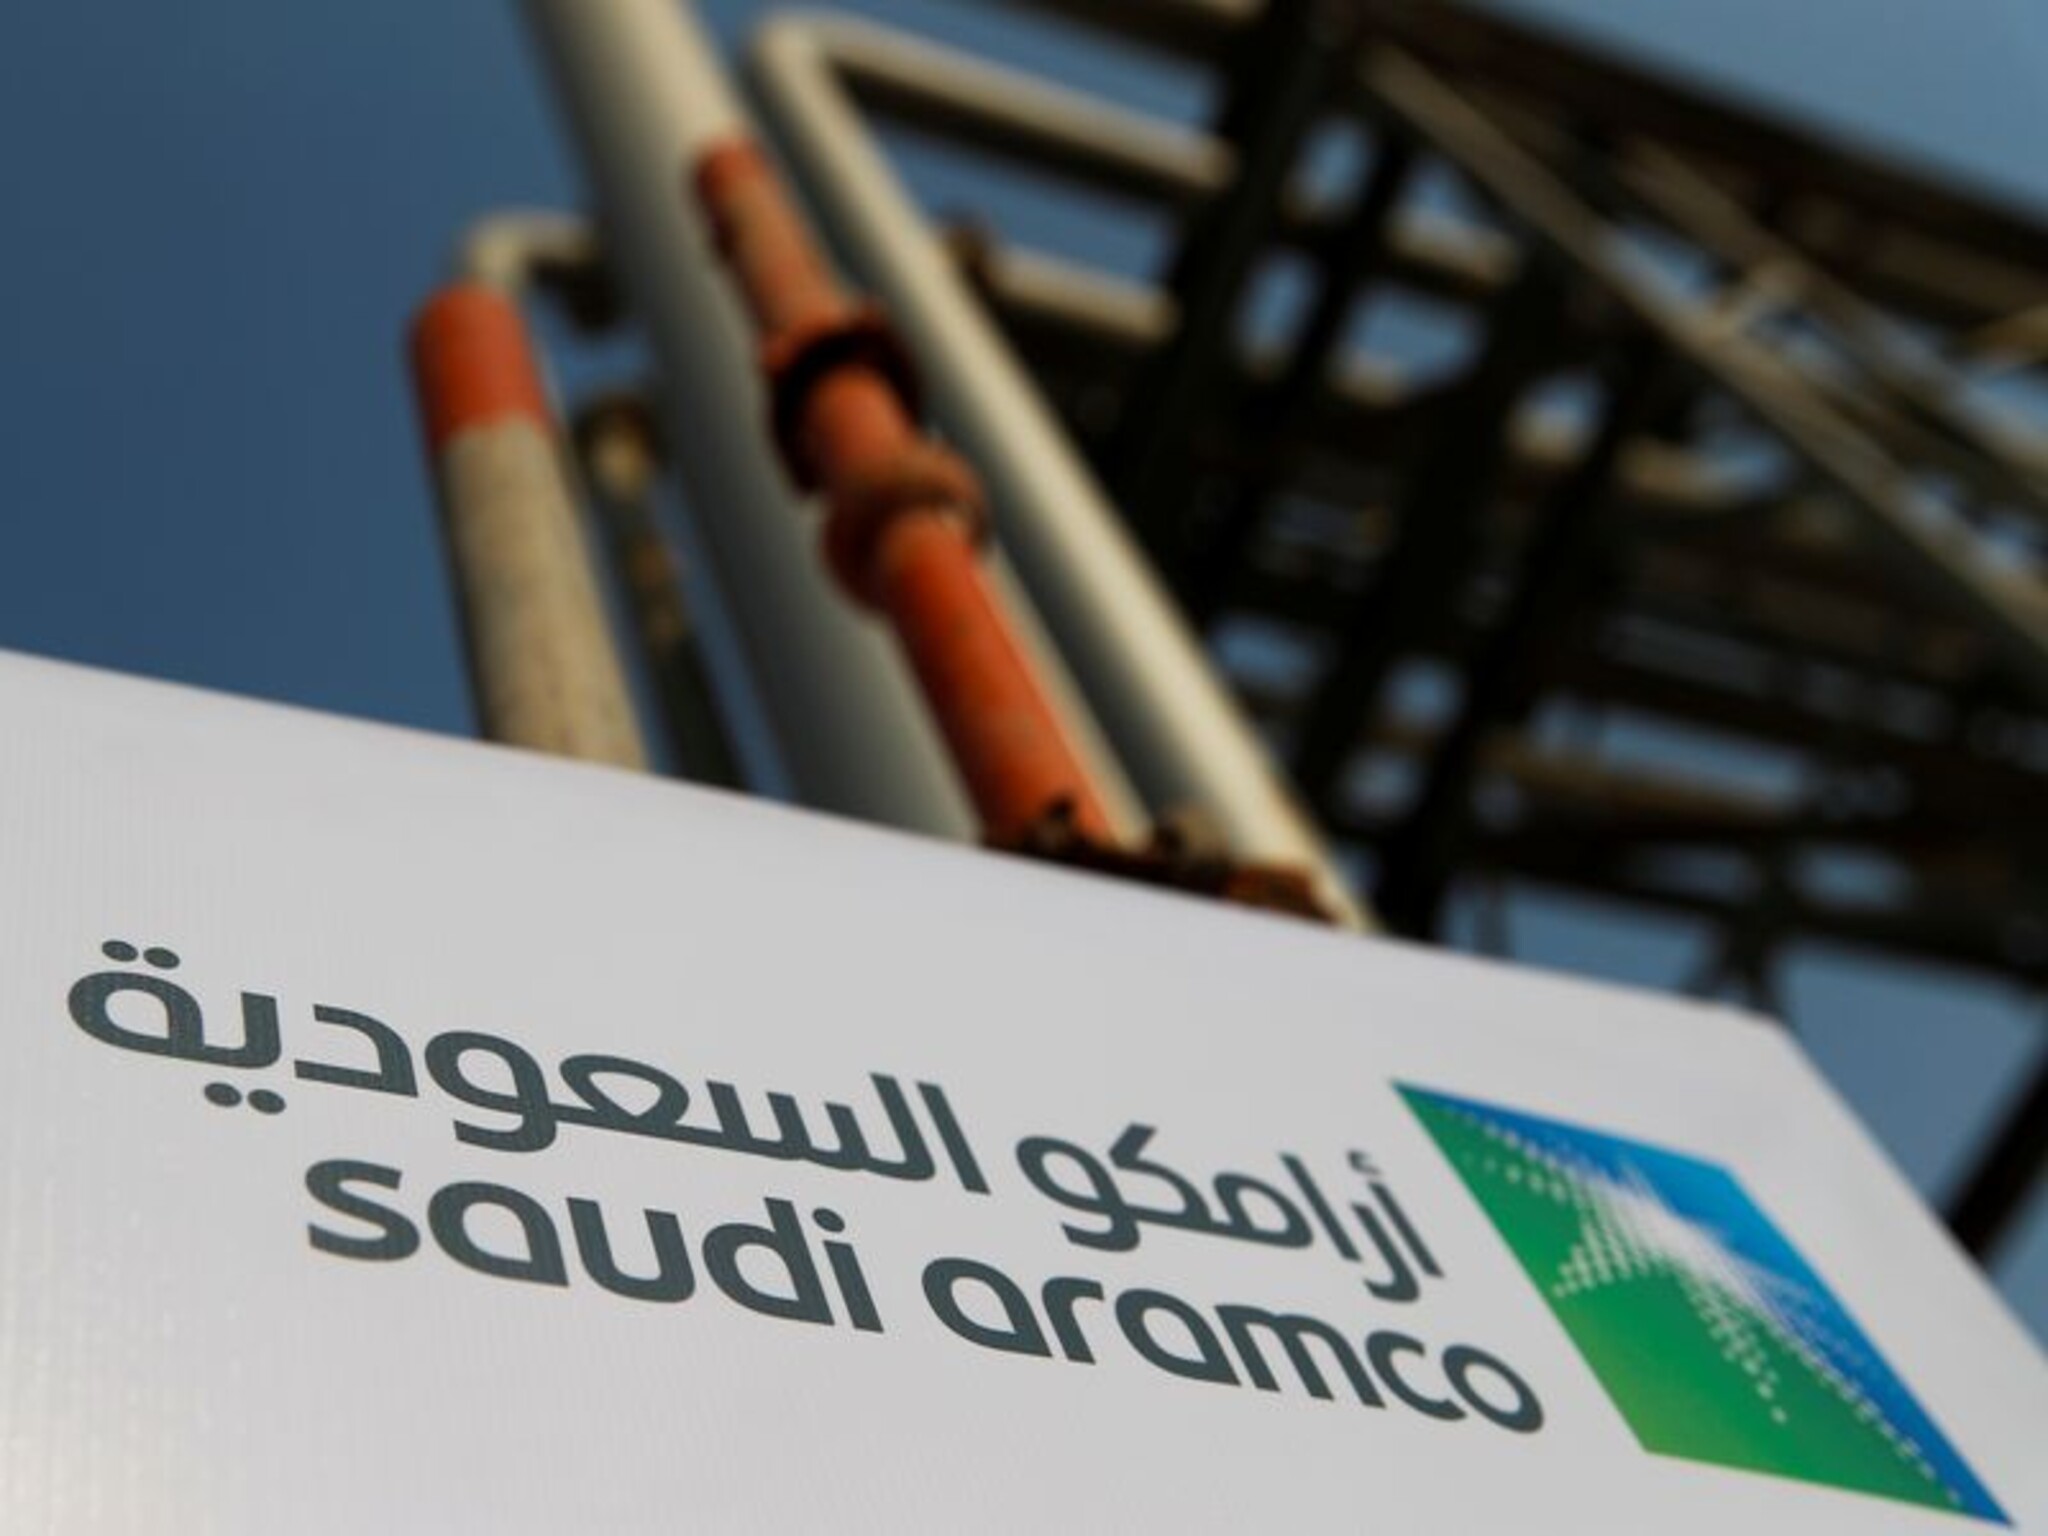 أرامكو ستورد كامل كميات النفط لعملاءها في آسيا خلال شهر سبتمبر القادم 